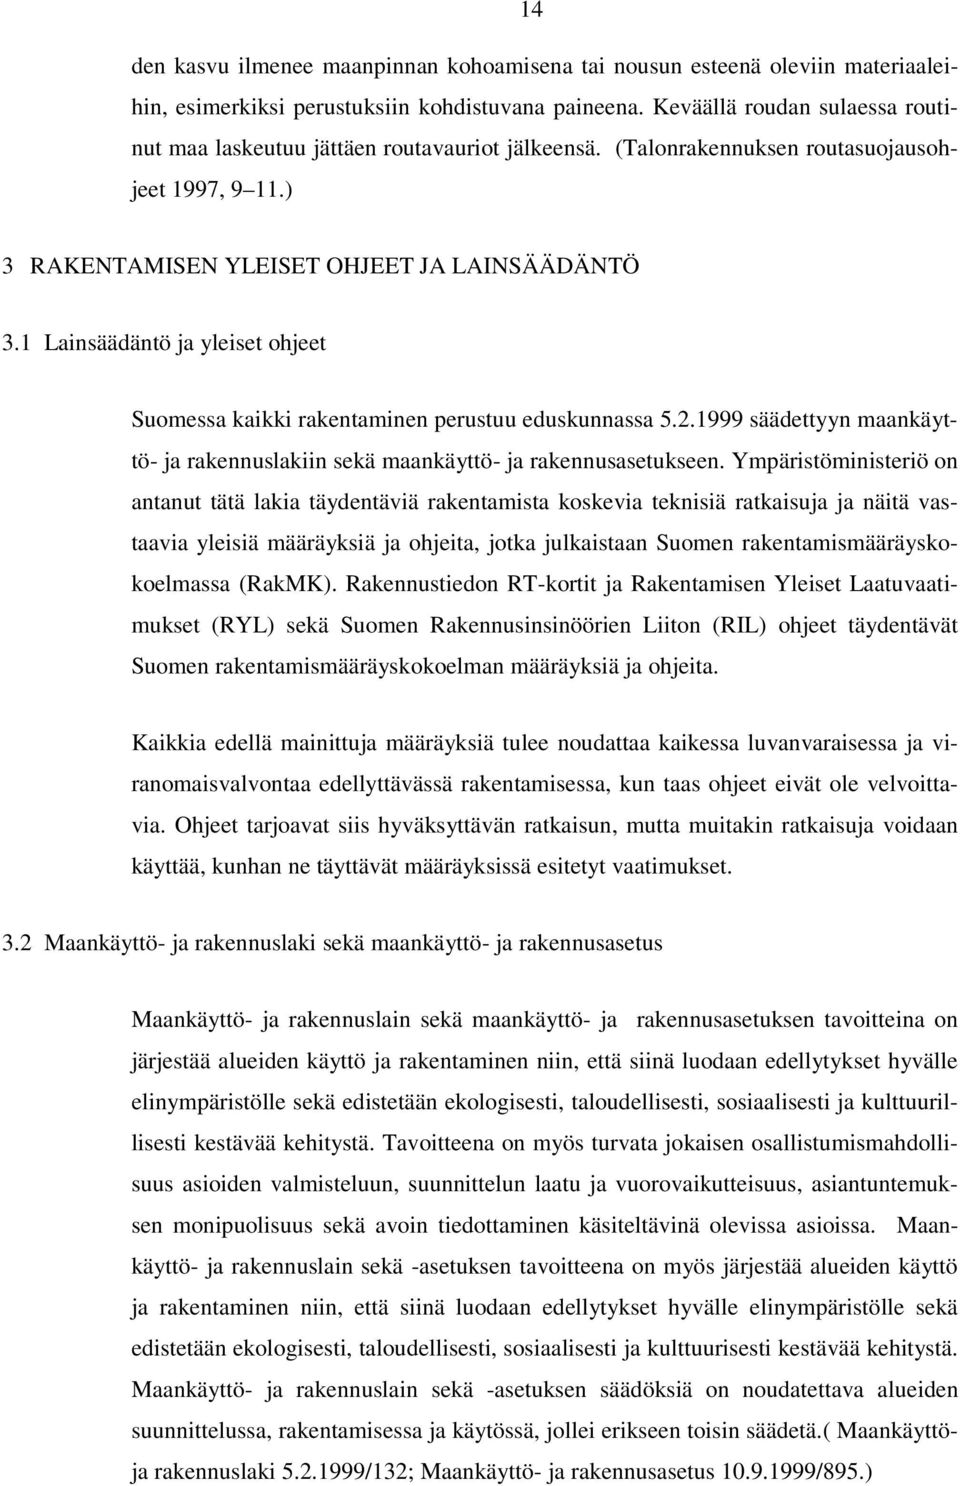 1 Lainsäädäntö ja yleiset ohjeet Suomessa kaikki rakentaminen perustuu eduskunnassa 5.2.1999 säädettyyn maankäyttö- ja rakennuslakiin sekä maankäyttö- ja rakennusasetukseen.